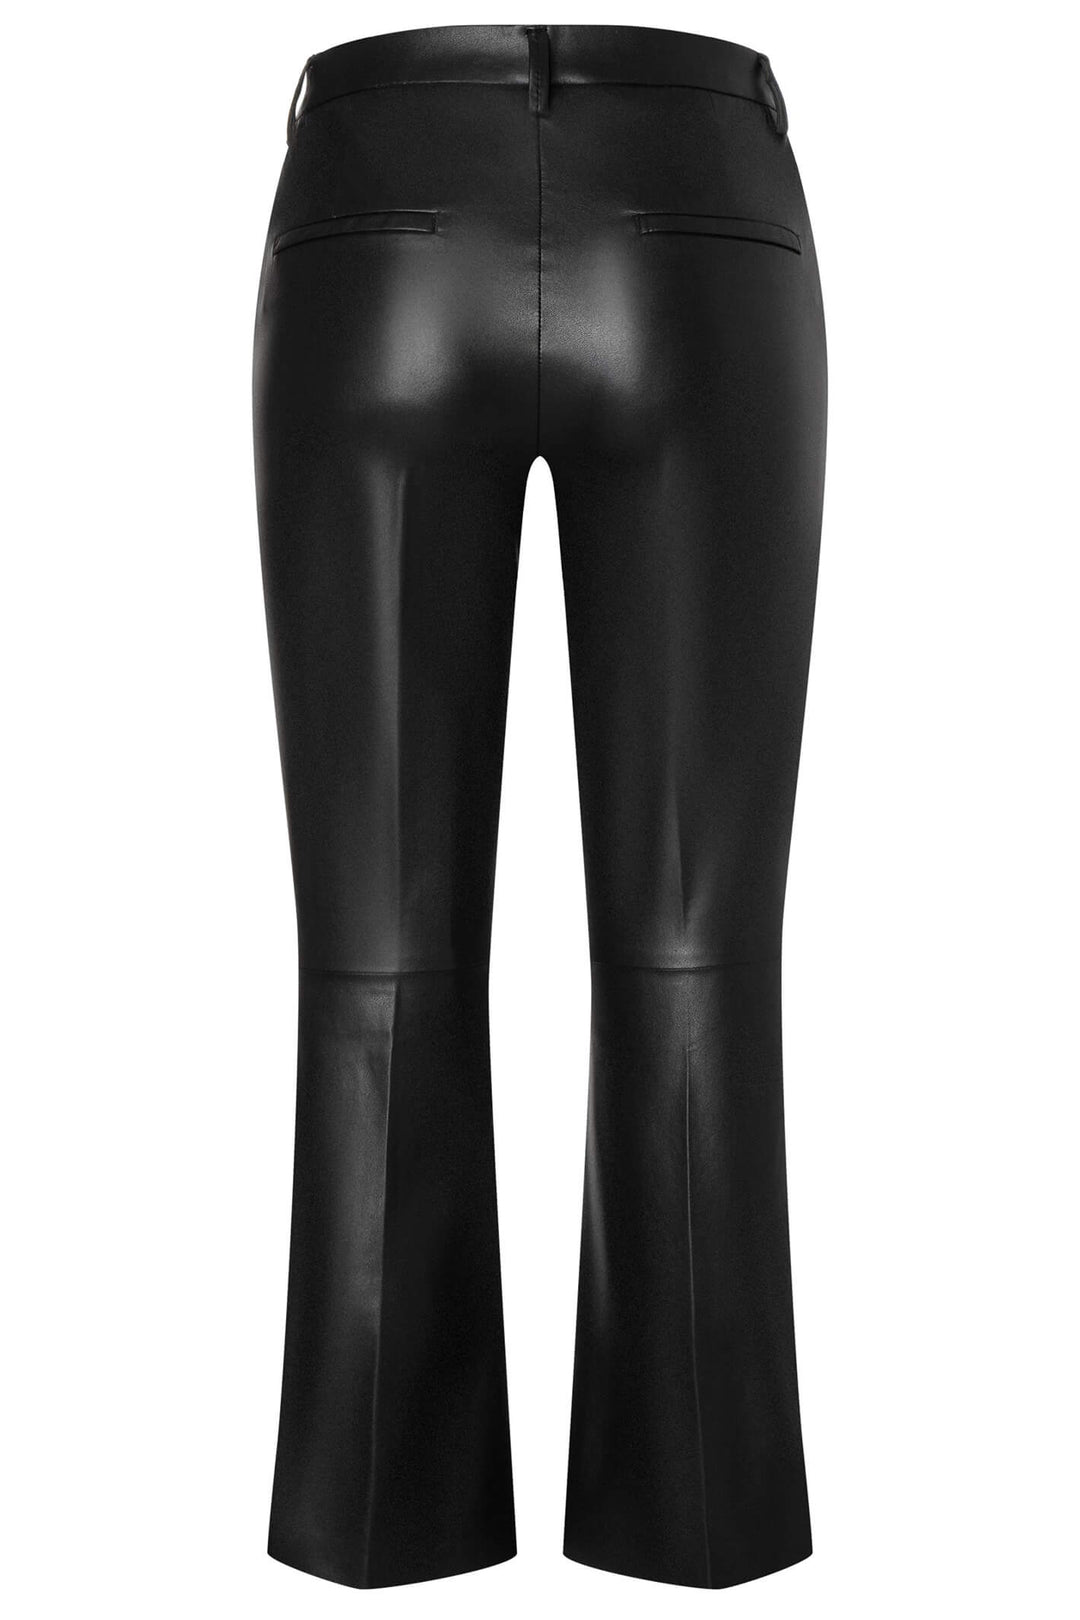 Mac Aida Kick 3082-00-0498L Black Vegan Leather Kick Flare Trousers - Olivia Grace Fashion